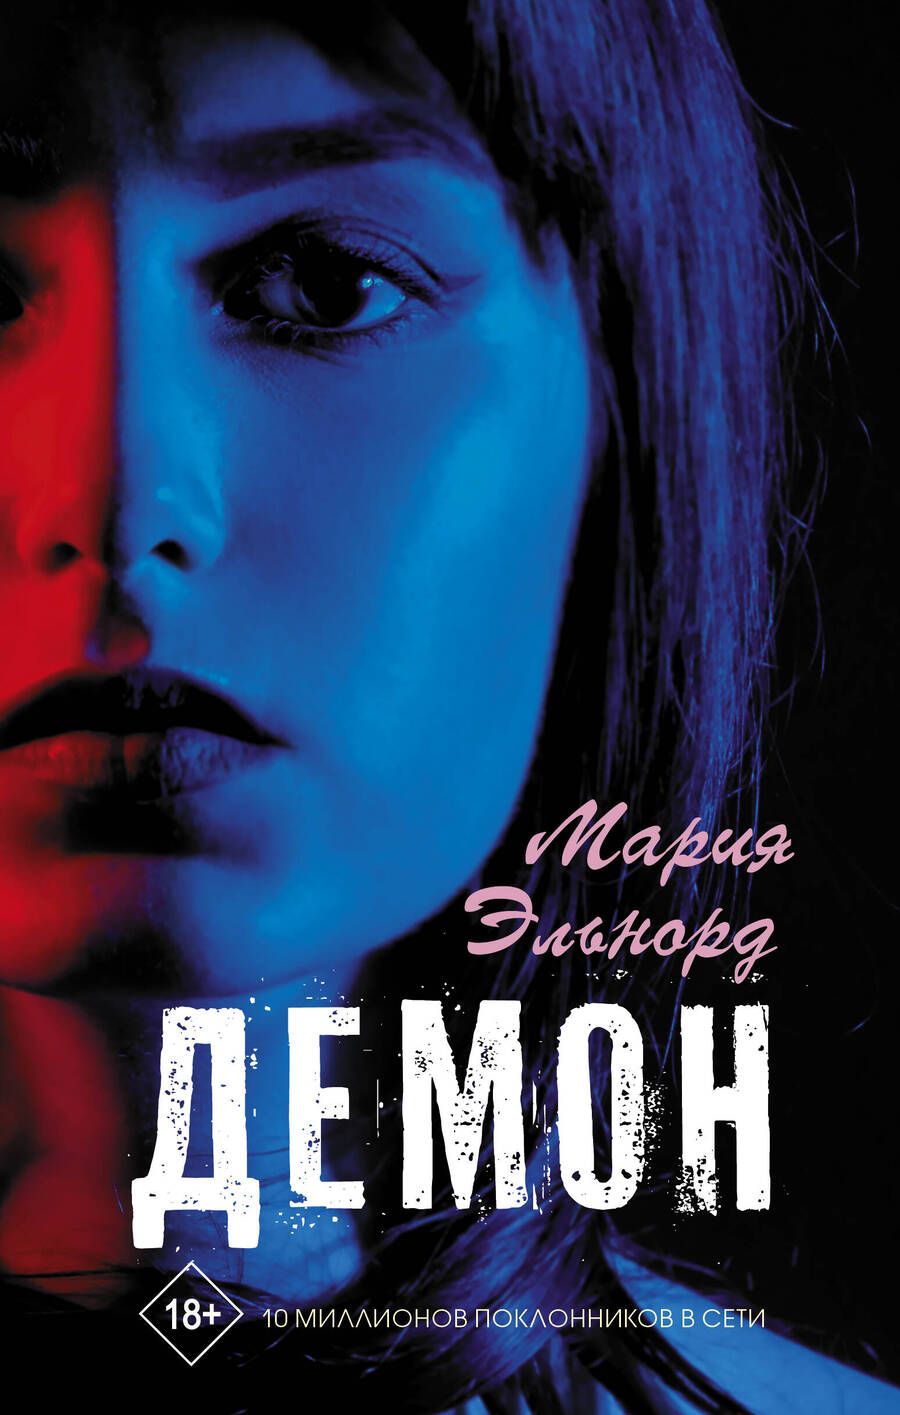 Обложка книги "Мария Эльнорд: Демон"